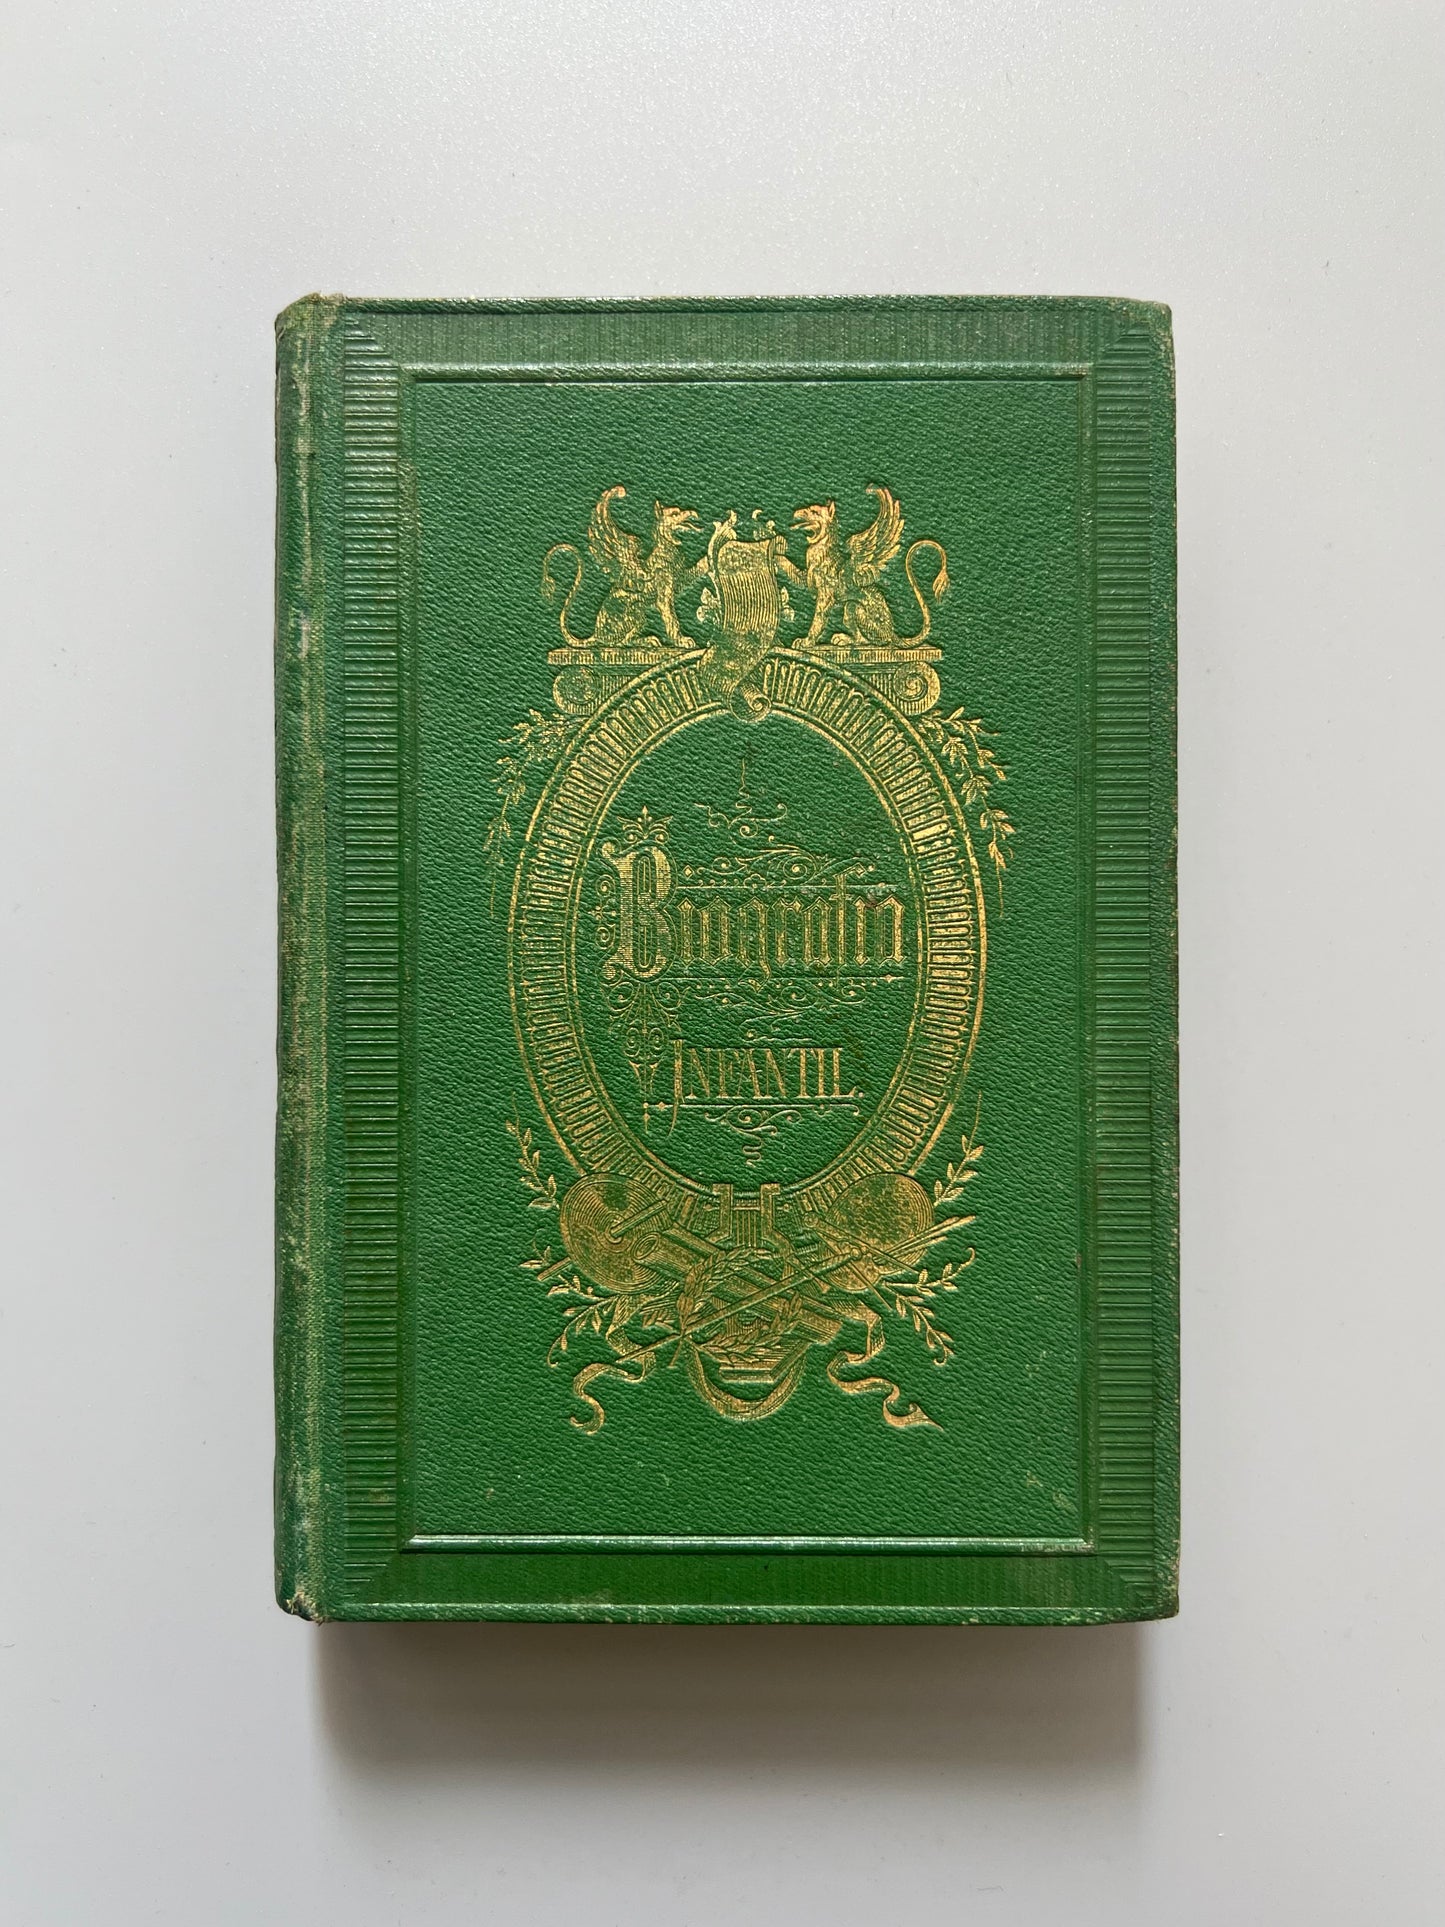 Biografía infantil, galería de hombres célebres - Juan Bastinos e hijo editores, 1874